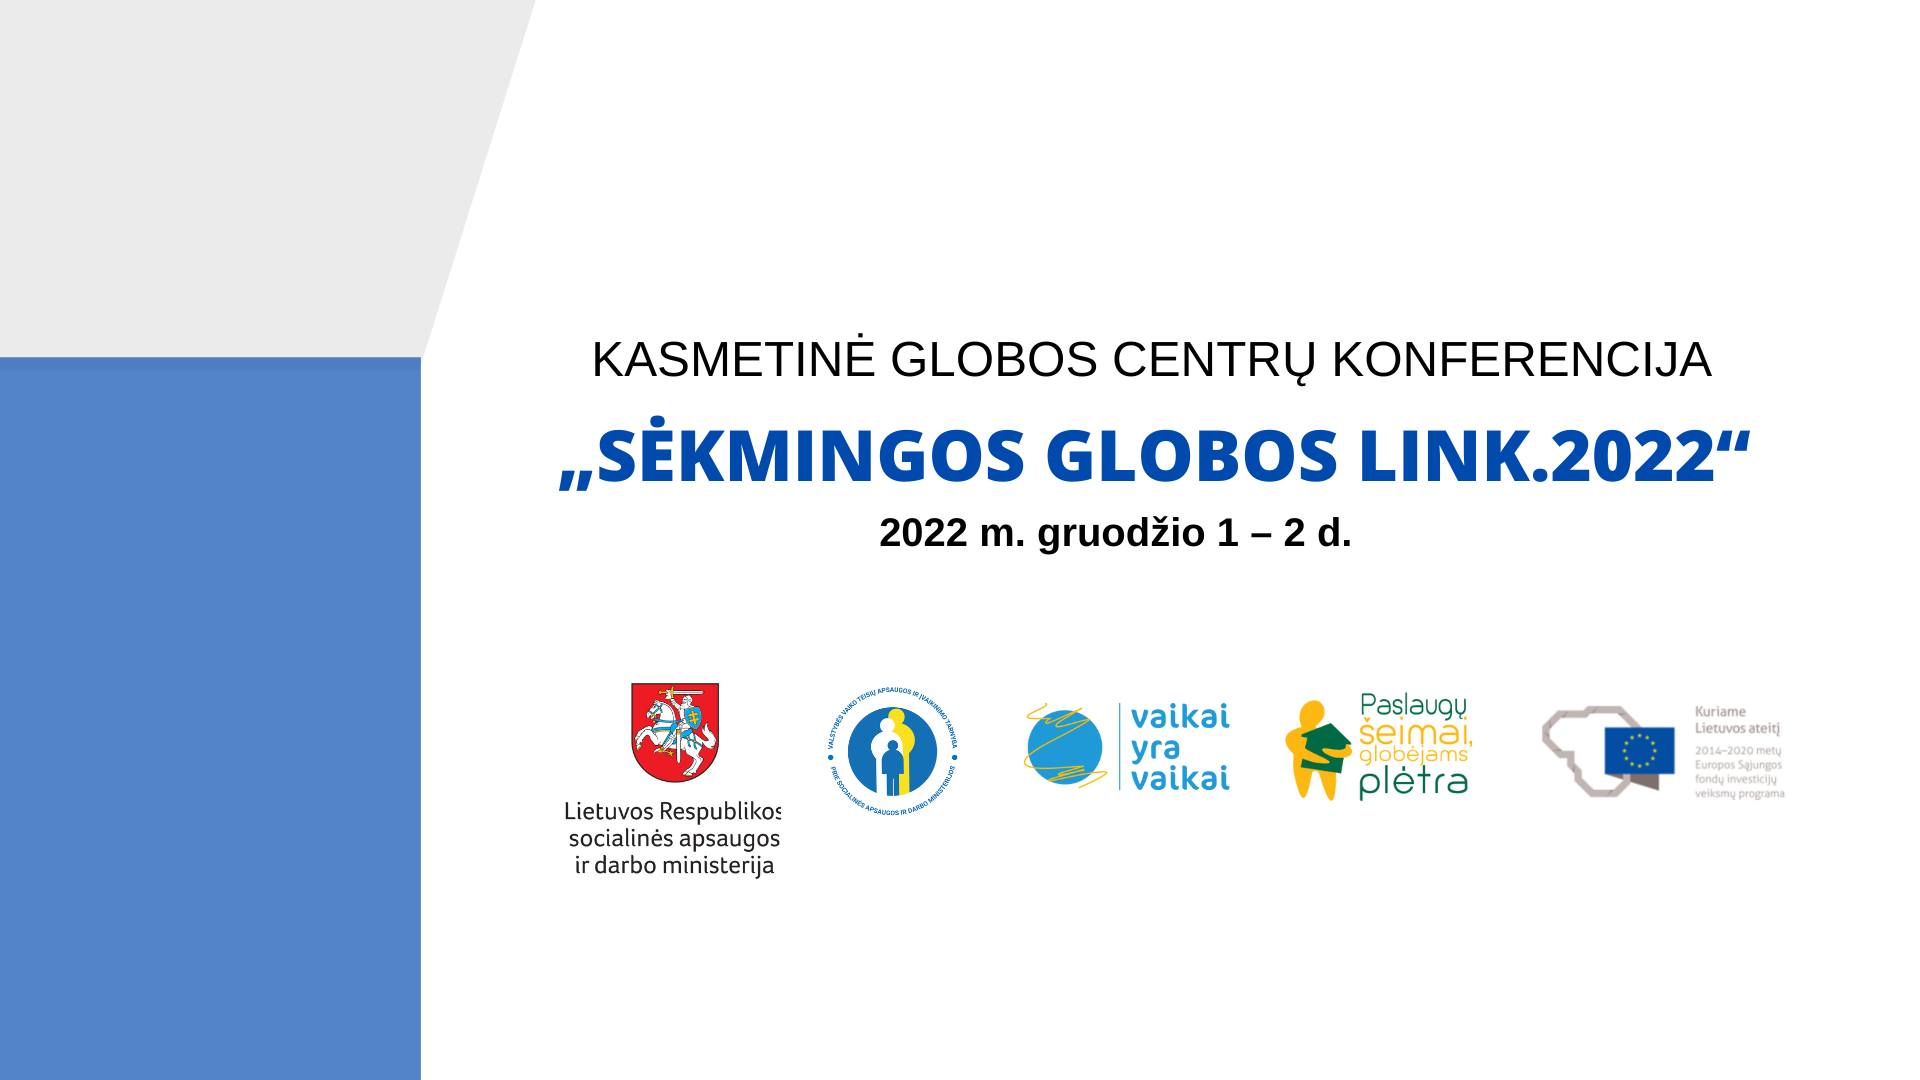 Kasmetinė globos centrų konferencija „SĖKMINGOS GLOBOS LINK. 2022”